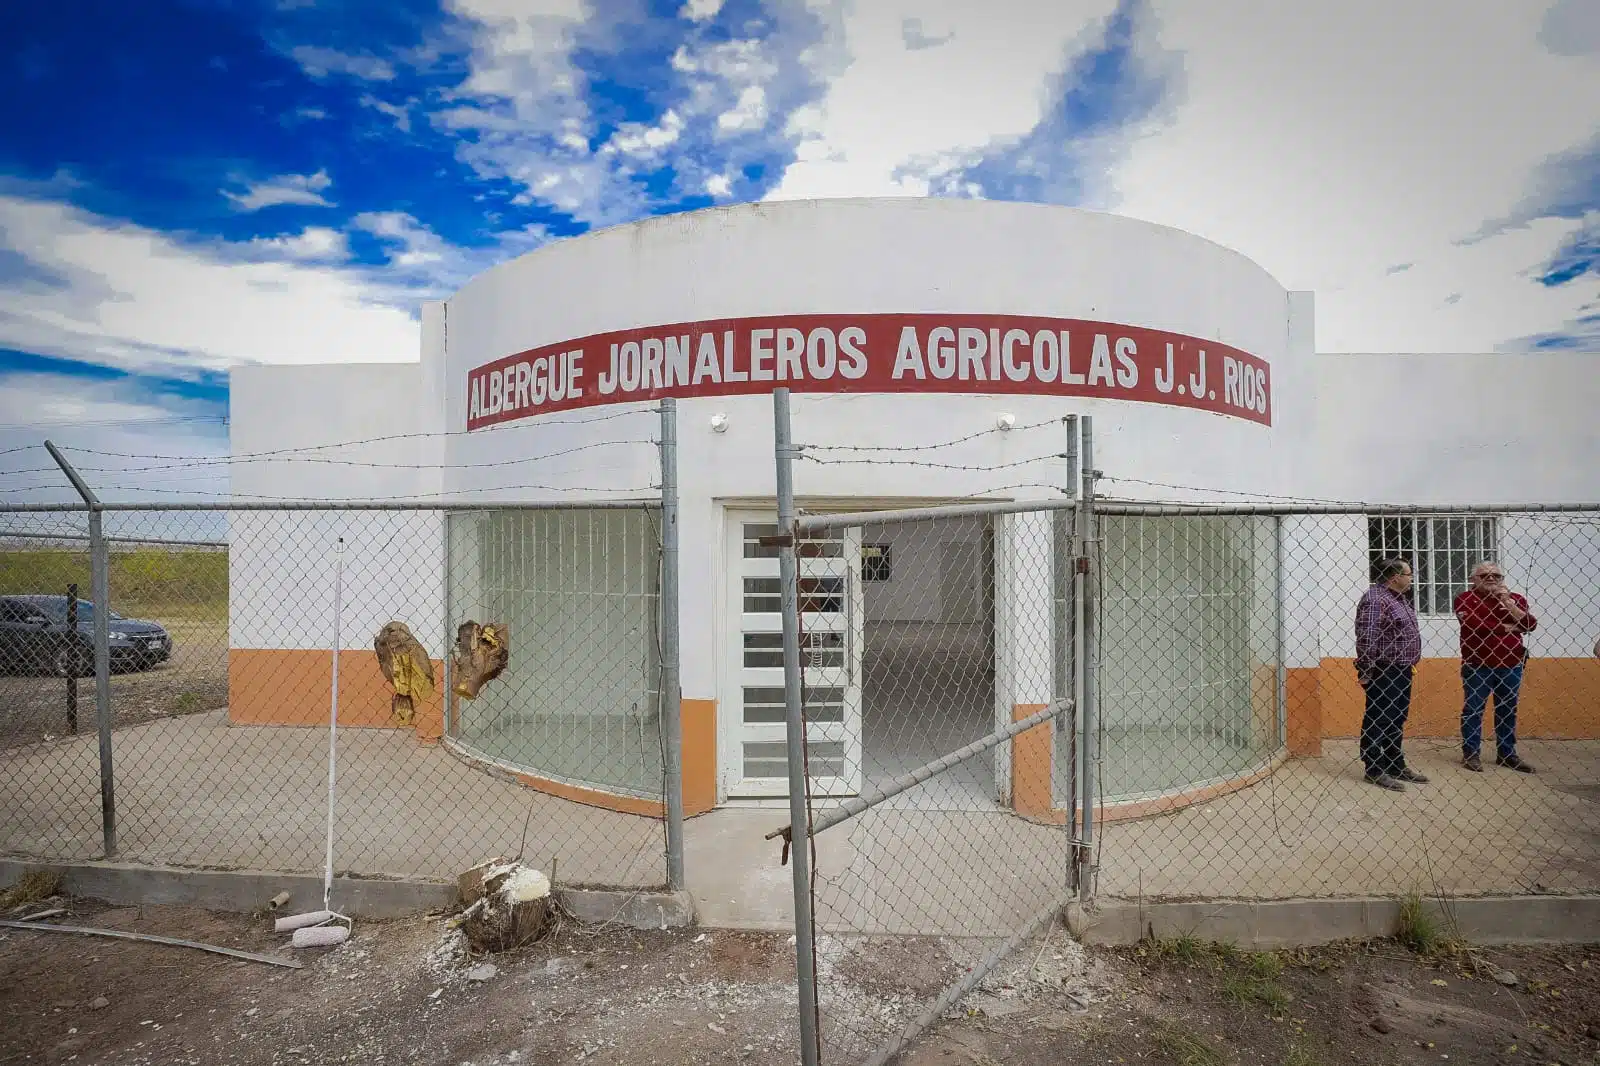 Jornaleros agrícolas en Juan José Ríos